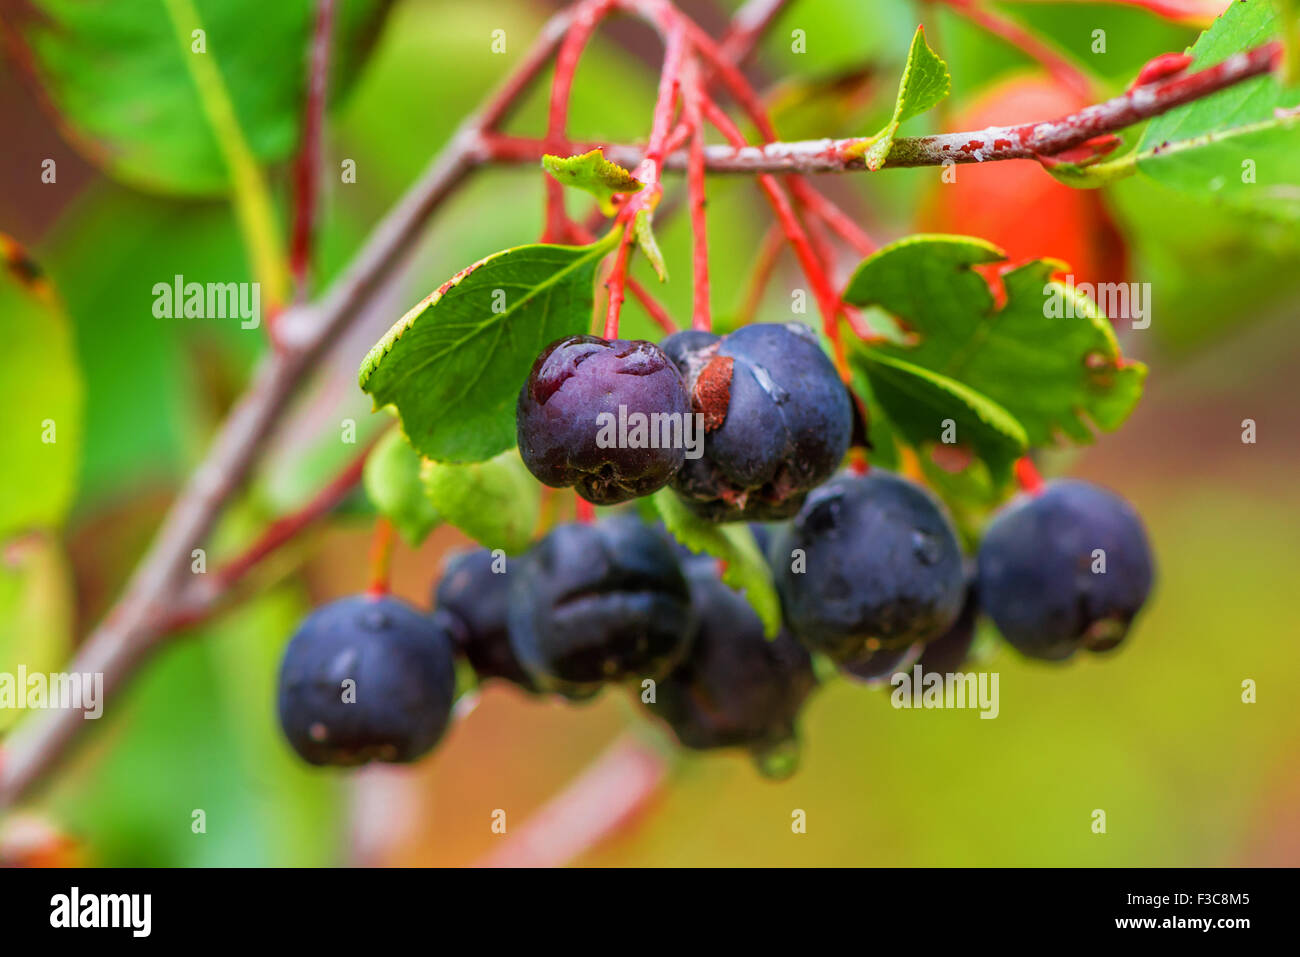 Black chokeberry Aronia ou petits fruits, sur la branche en verger bio, selective focus Banque D'Images